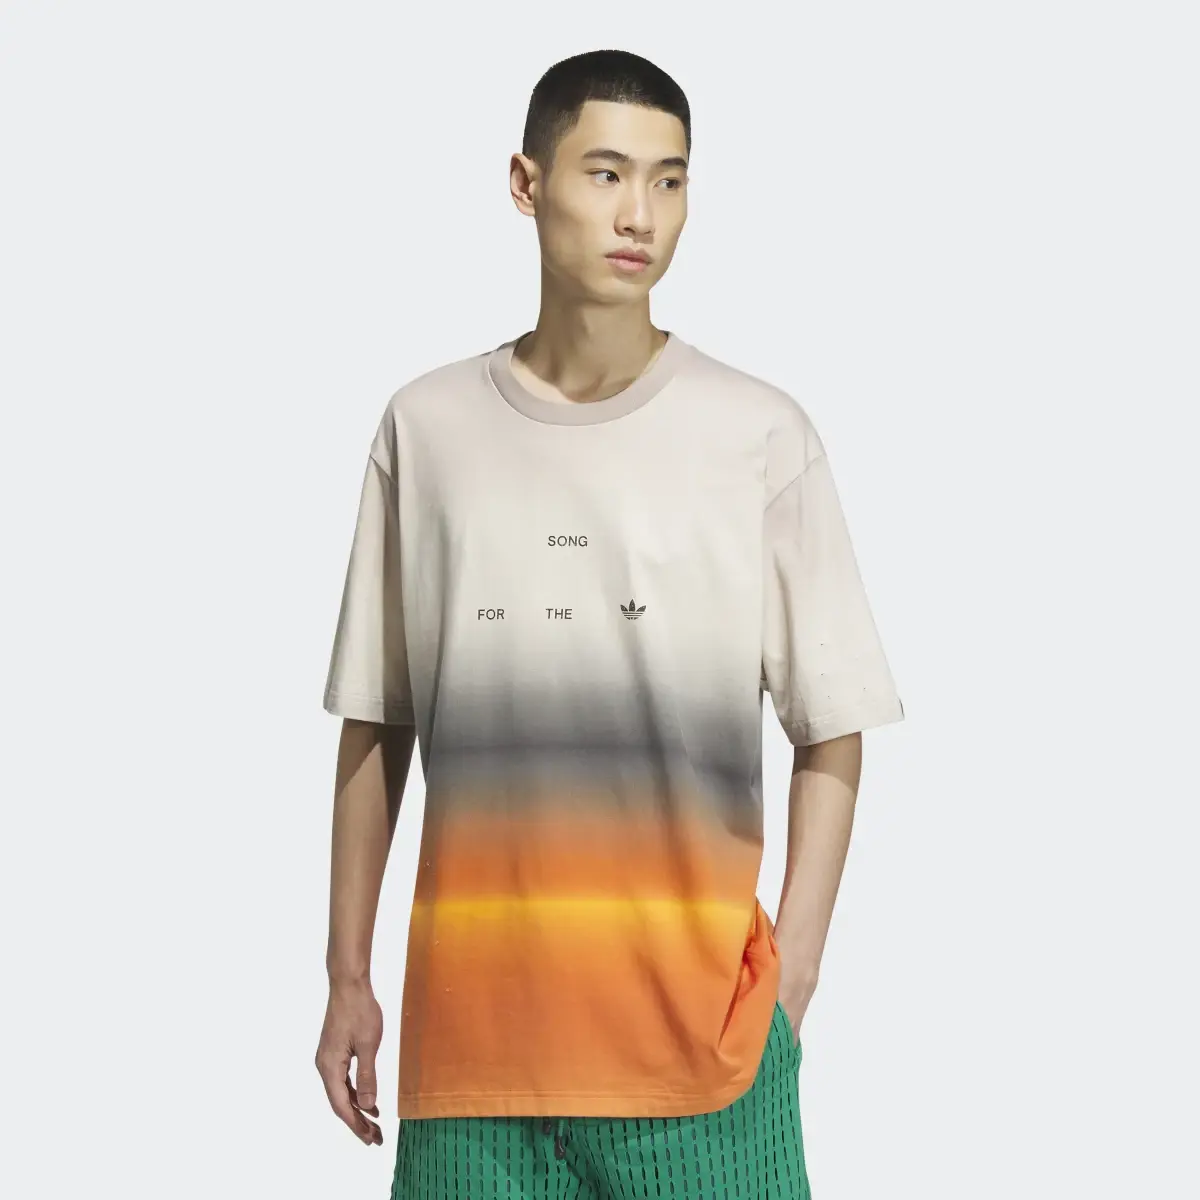 Adidas Koszulka SFTM Short Sleeve (Gender Neutral). 2